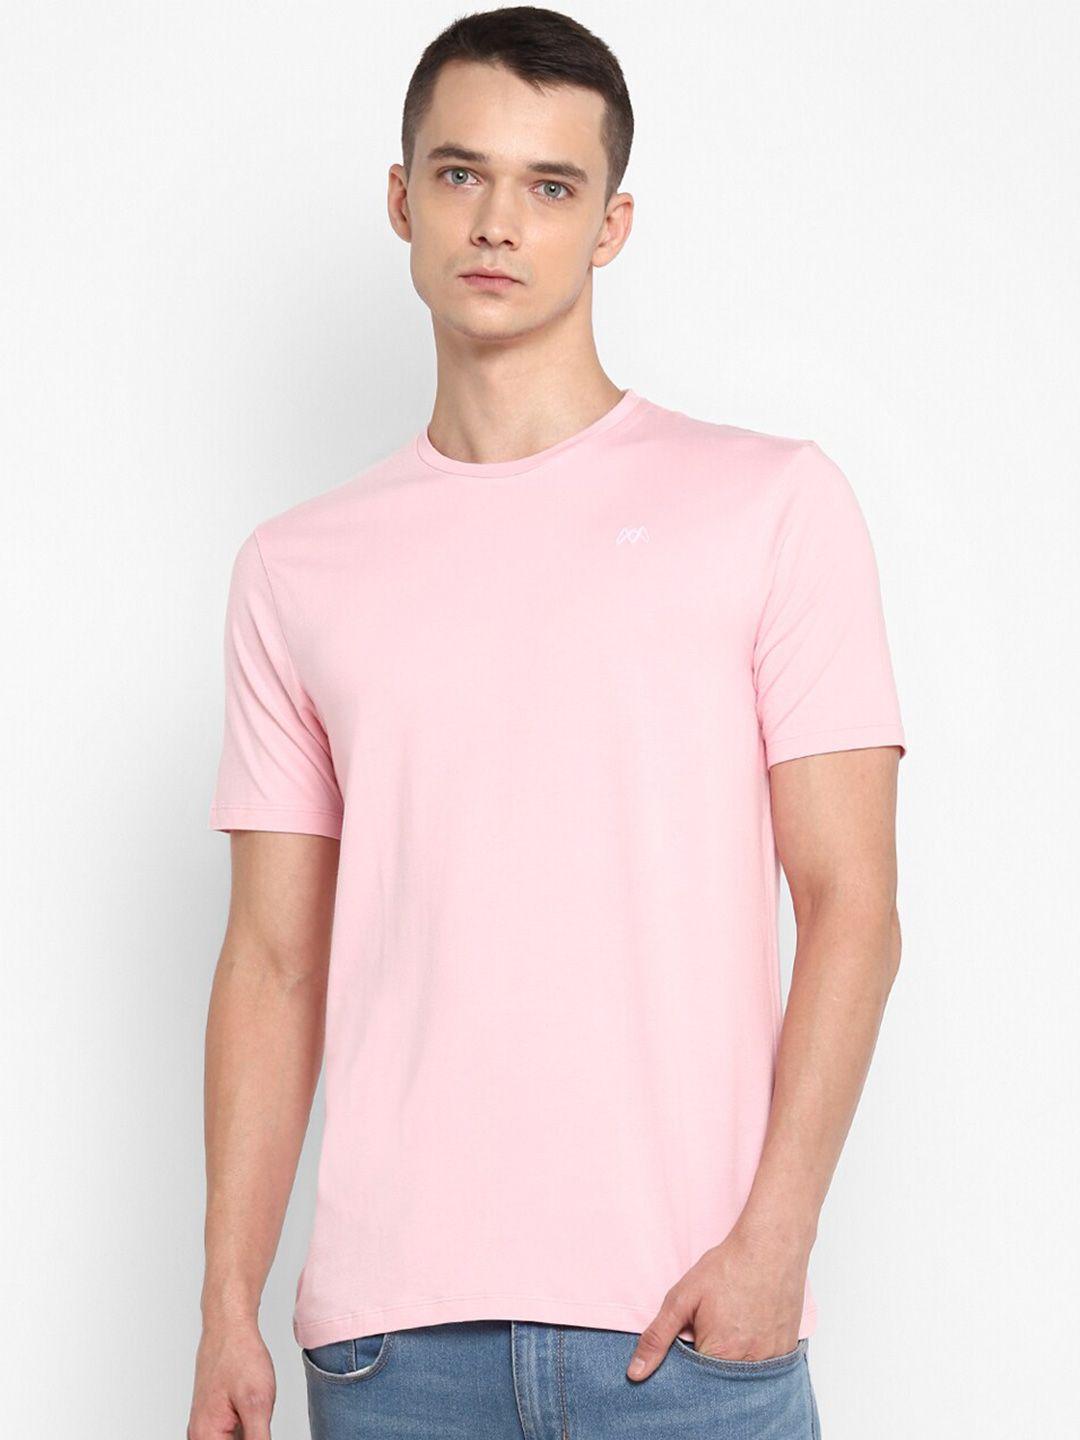 muwin men pink solid t-shirt